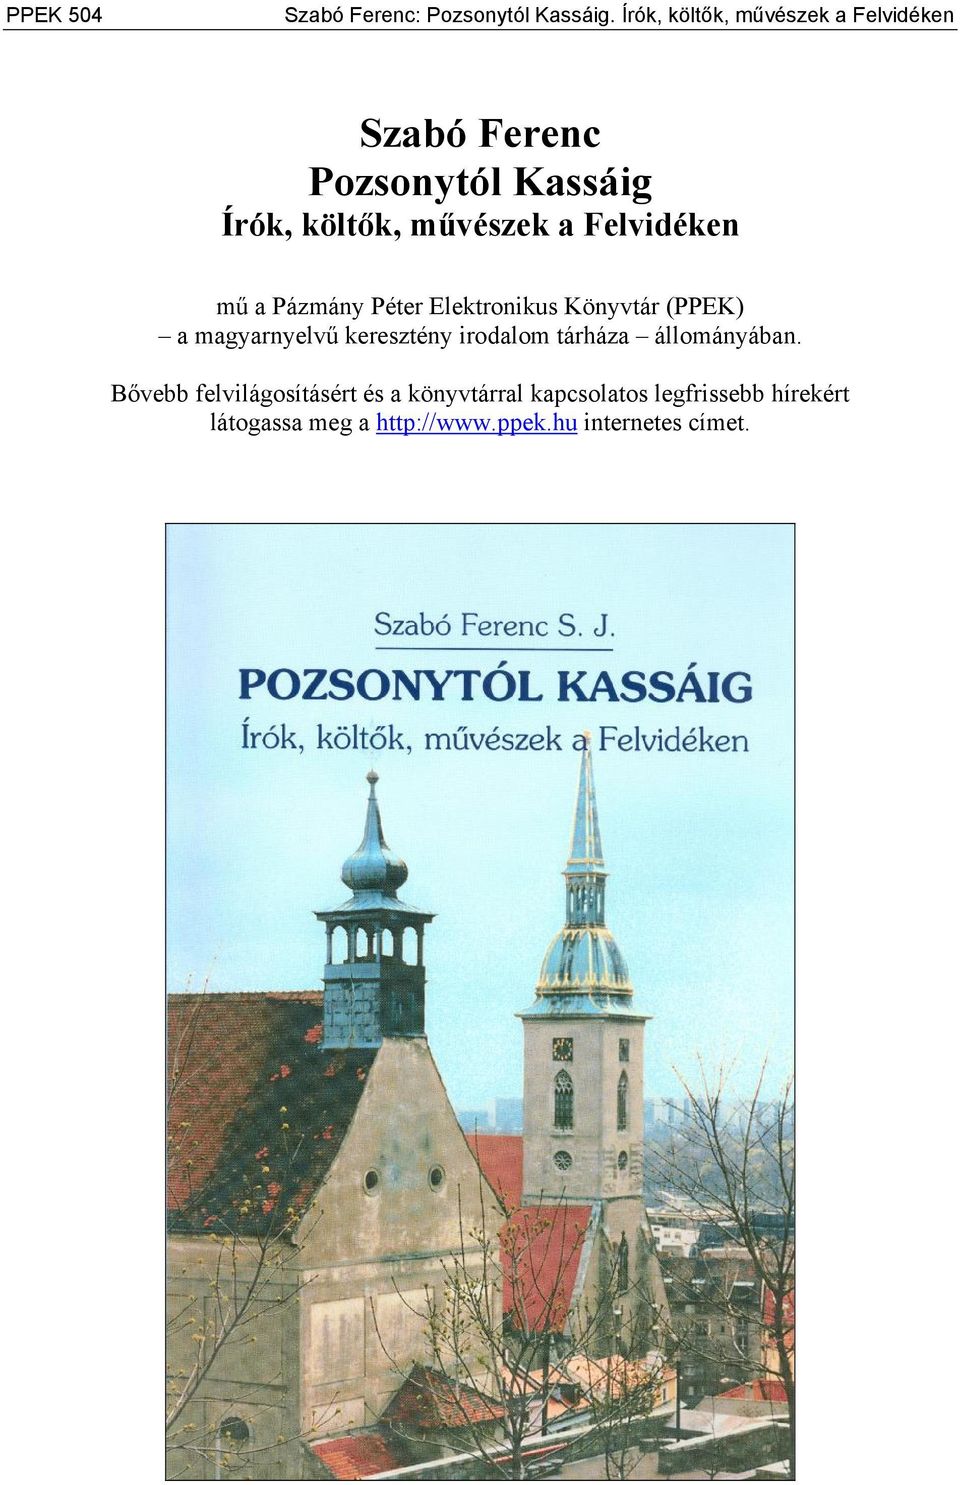 Felvidéken mű a Pázmány Péter Elektronikus Könyvtár (PPEK) a magyarnyelvű keresztény irodalom